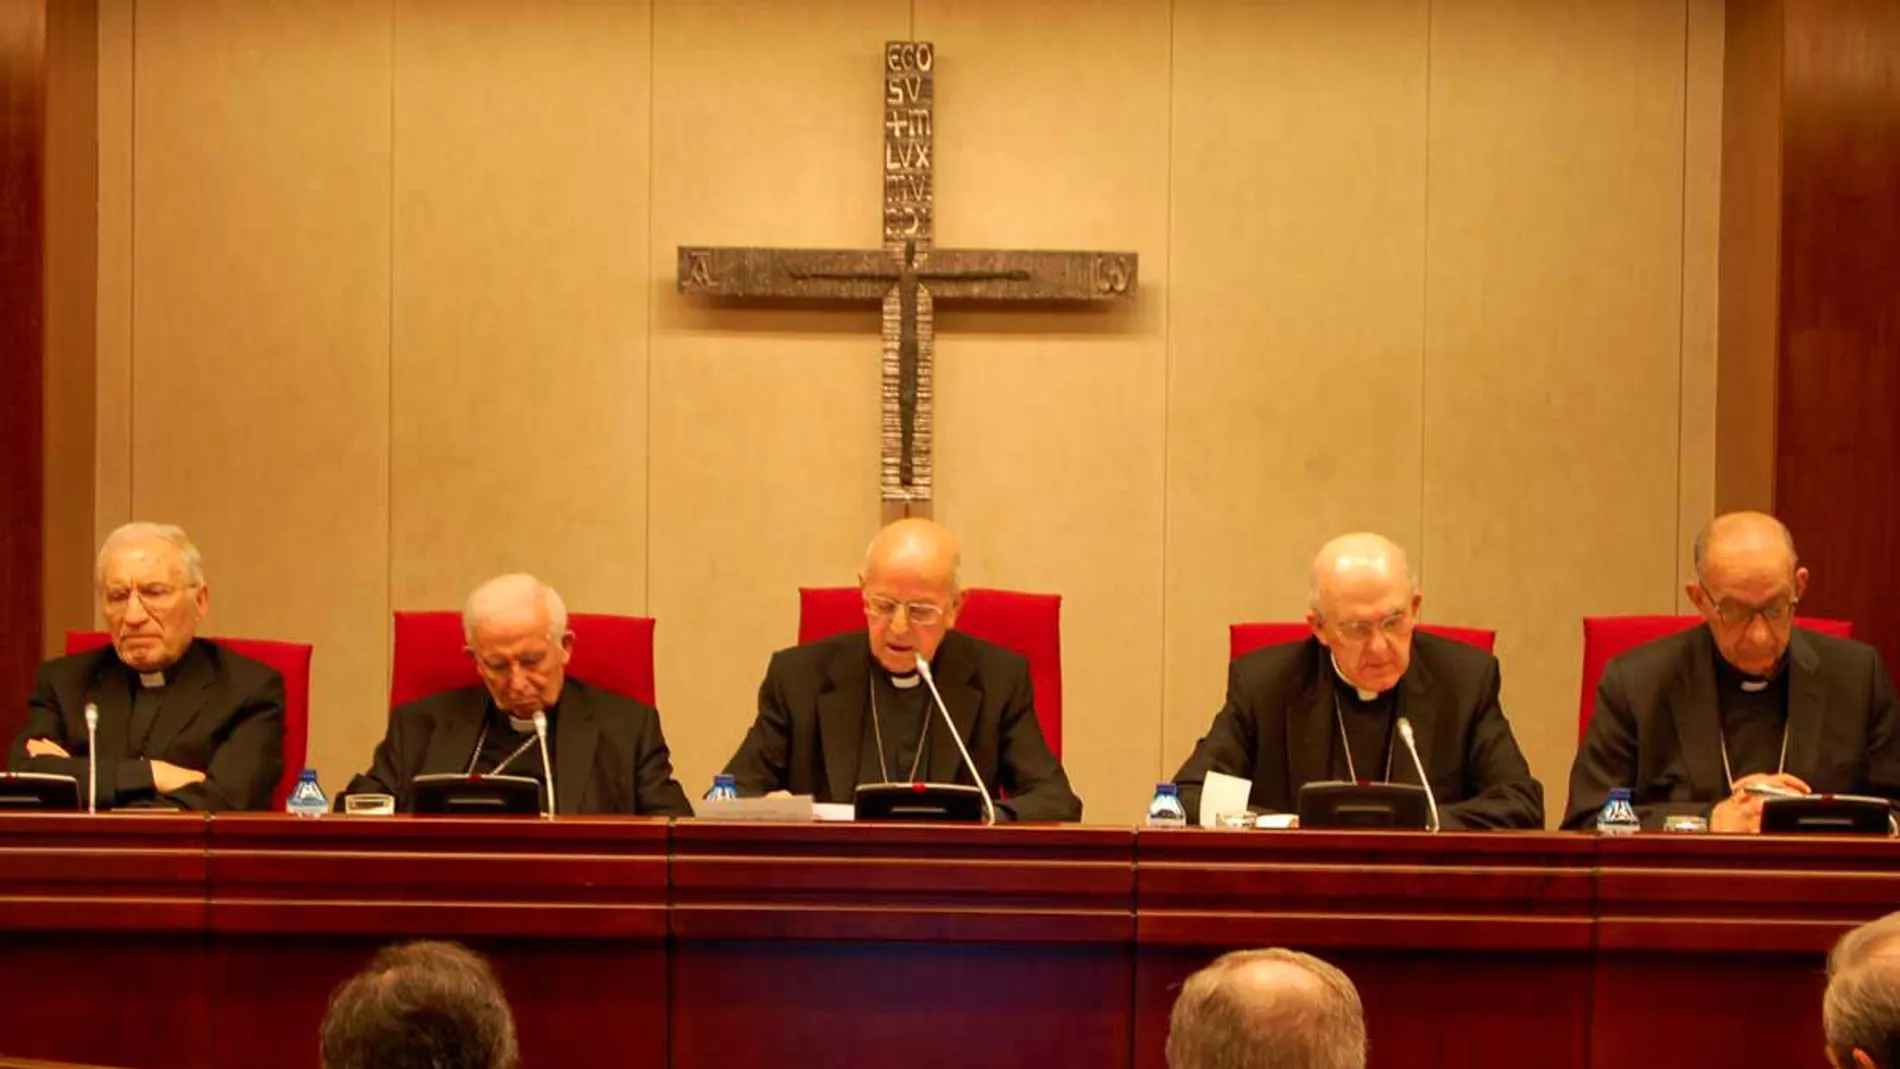 Discurso inaugural del cardenal Blázquez en la Asamblea Plenaria de la Conferencia Episcopal Española, celebrada el 18 de noviembre